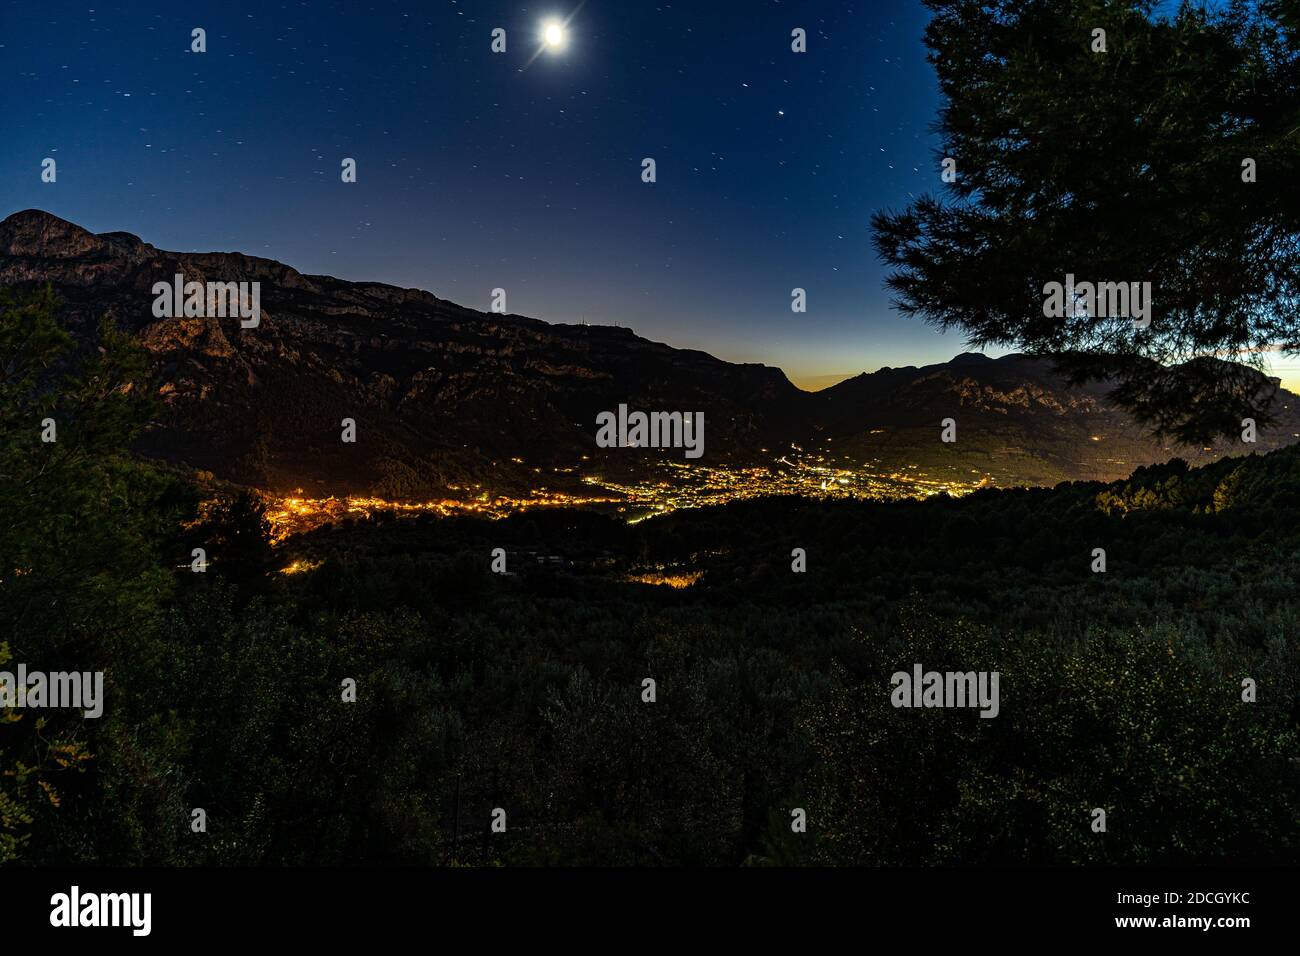 Spettacolare immagine della valle del Sóller con la città illuminata dalla strada Serra de Tramuntana, a Maiorca, Spagna. Foto Stock